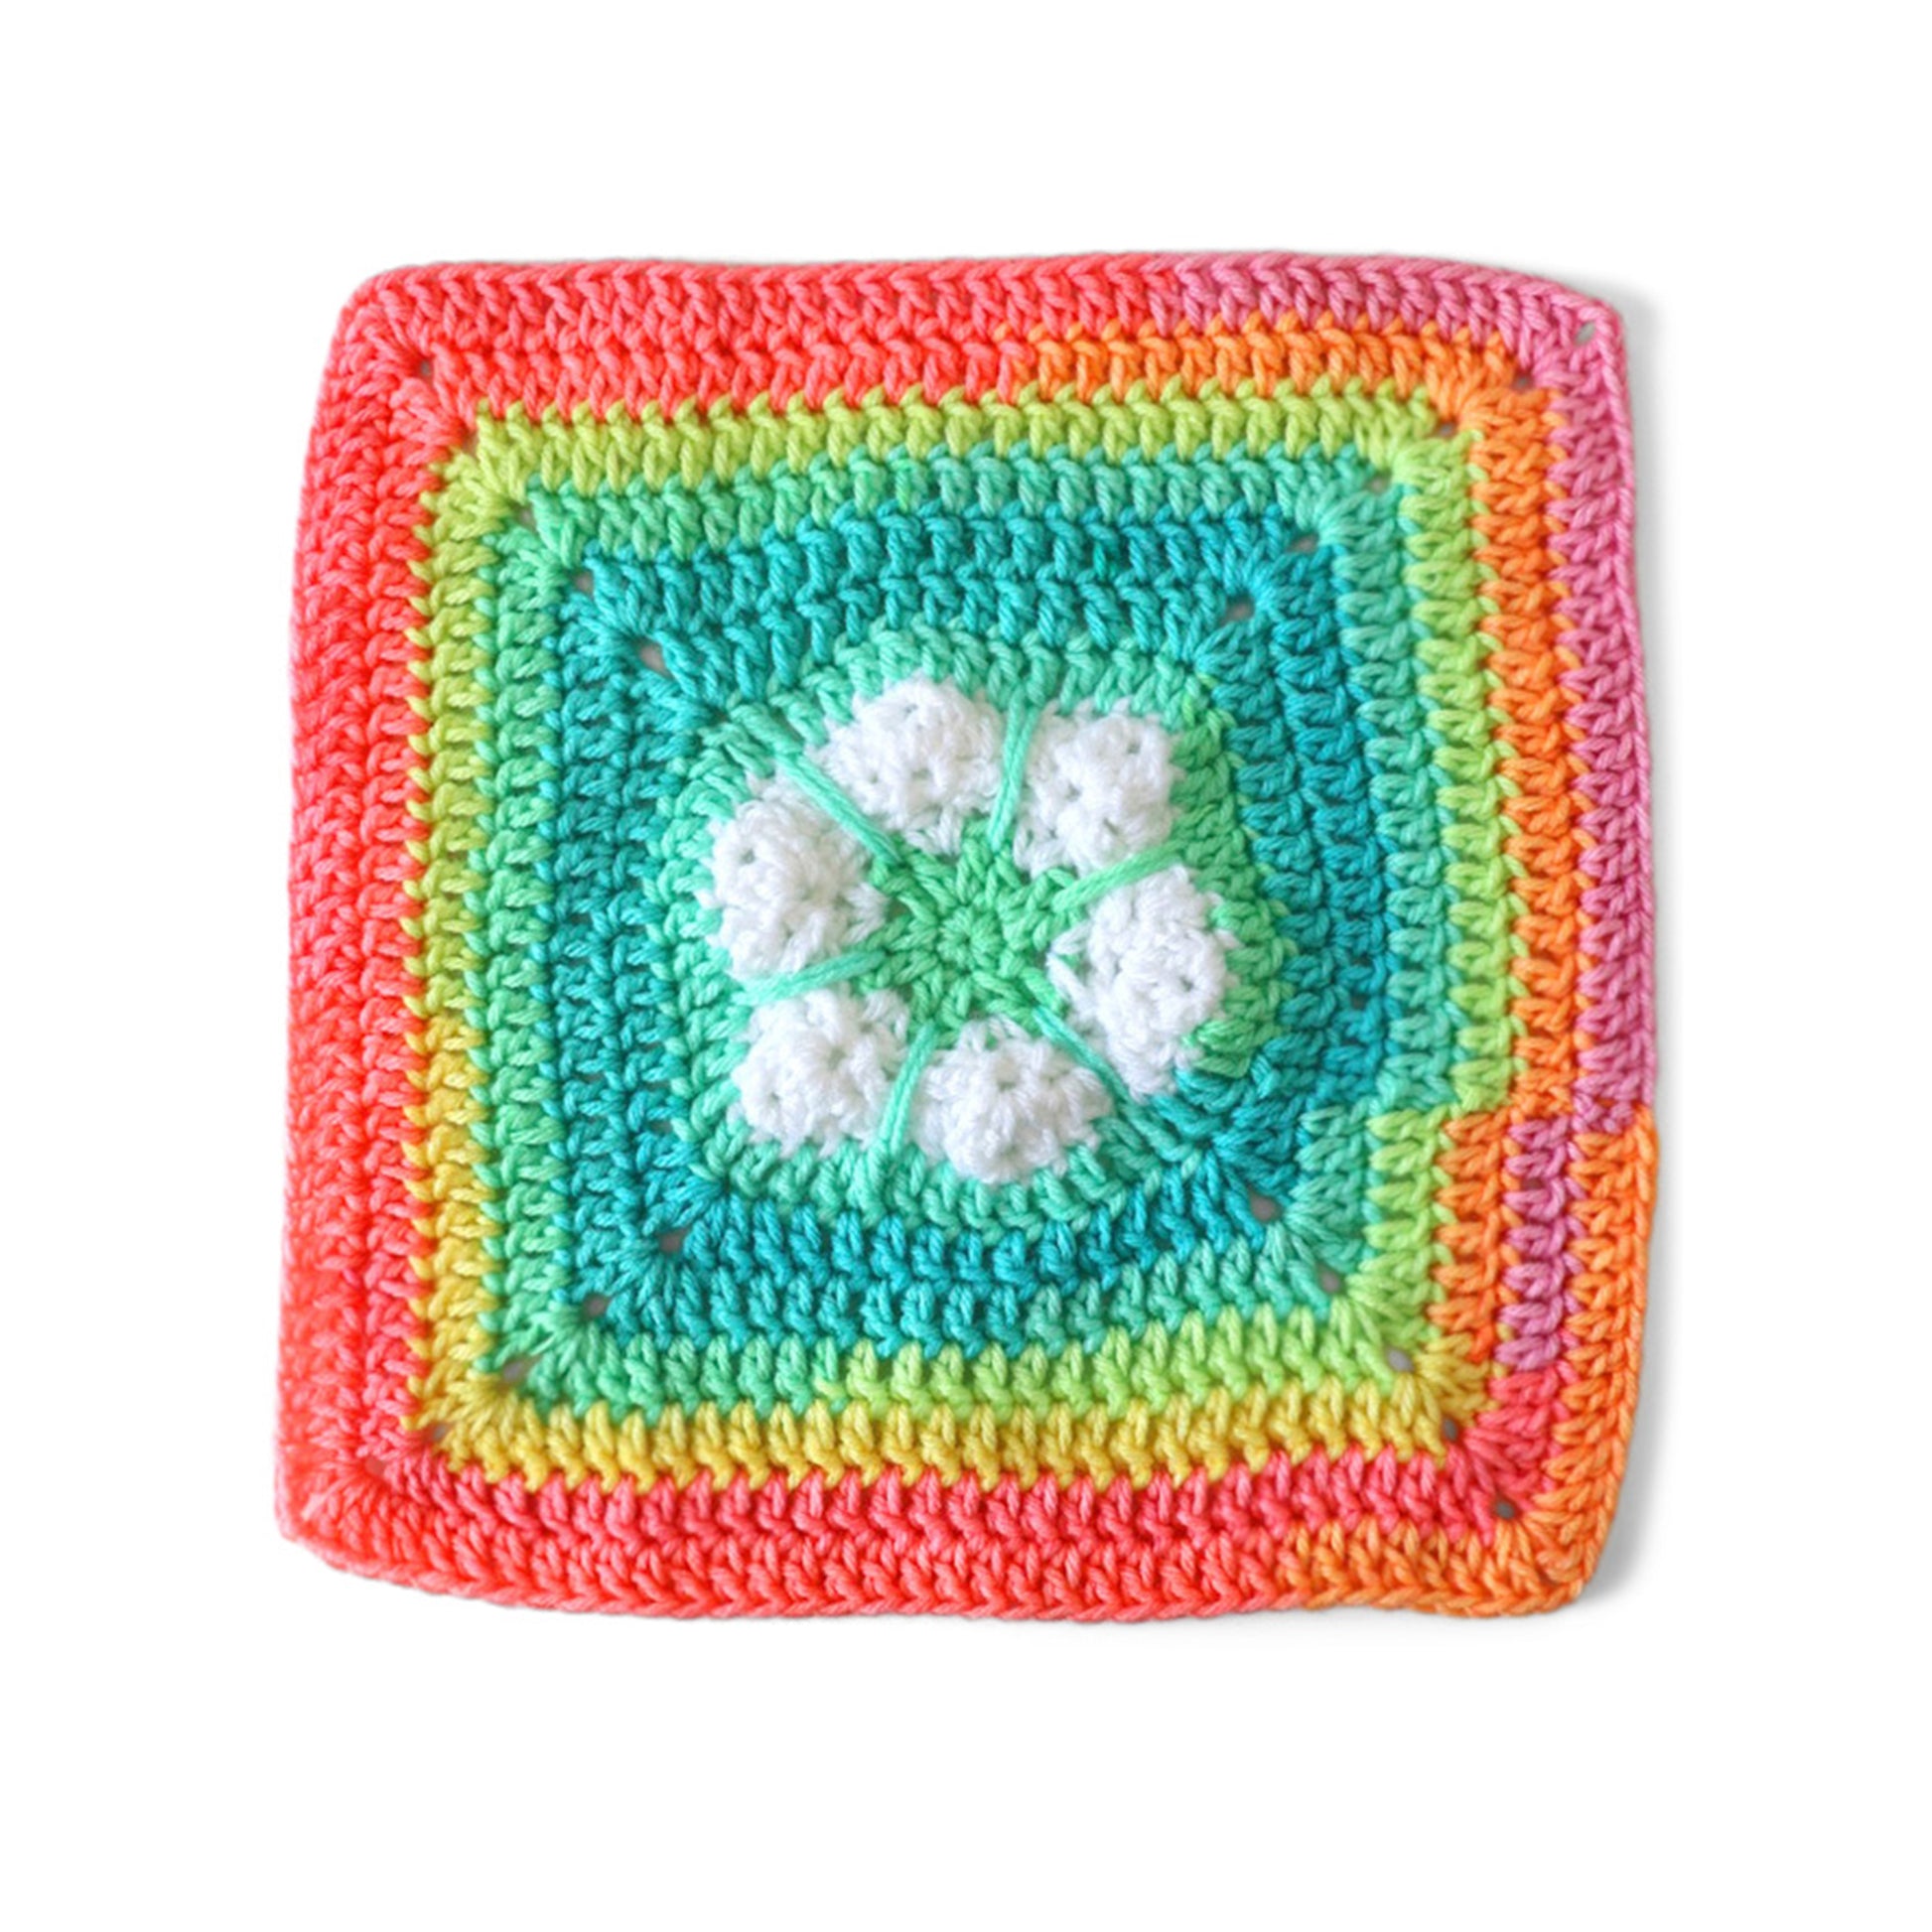 Free Red Heart Crochet Stitch in Season Snowflake Blanket Pattern